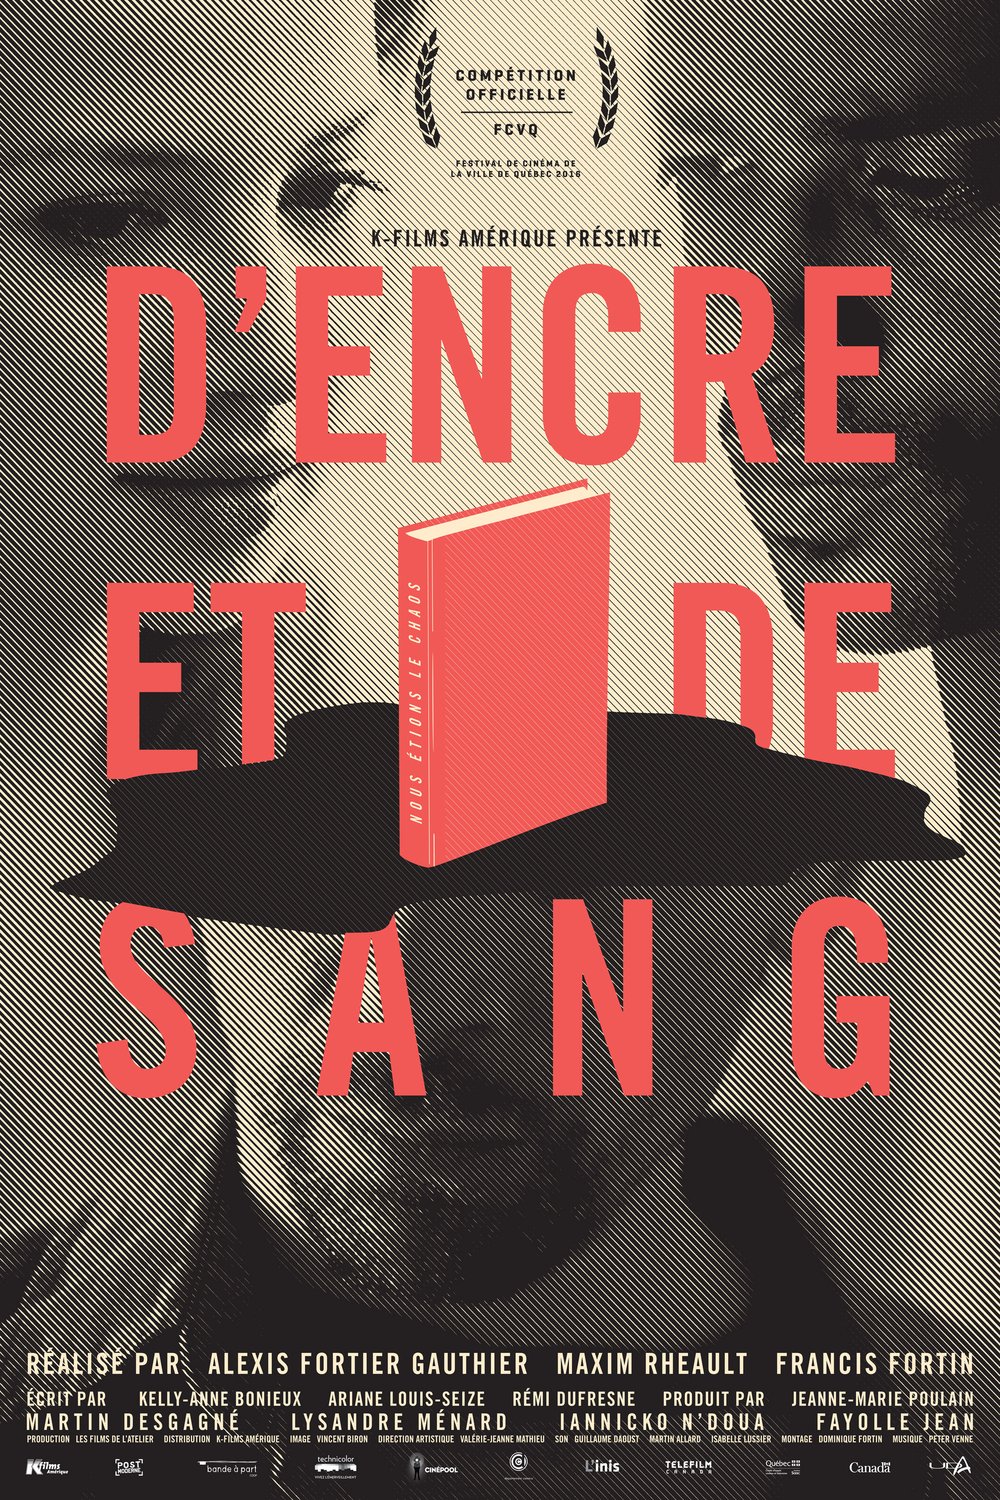 Poster of the movie D'encre et de sang